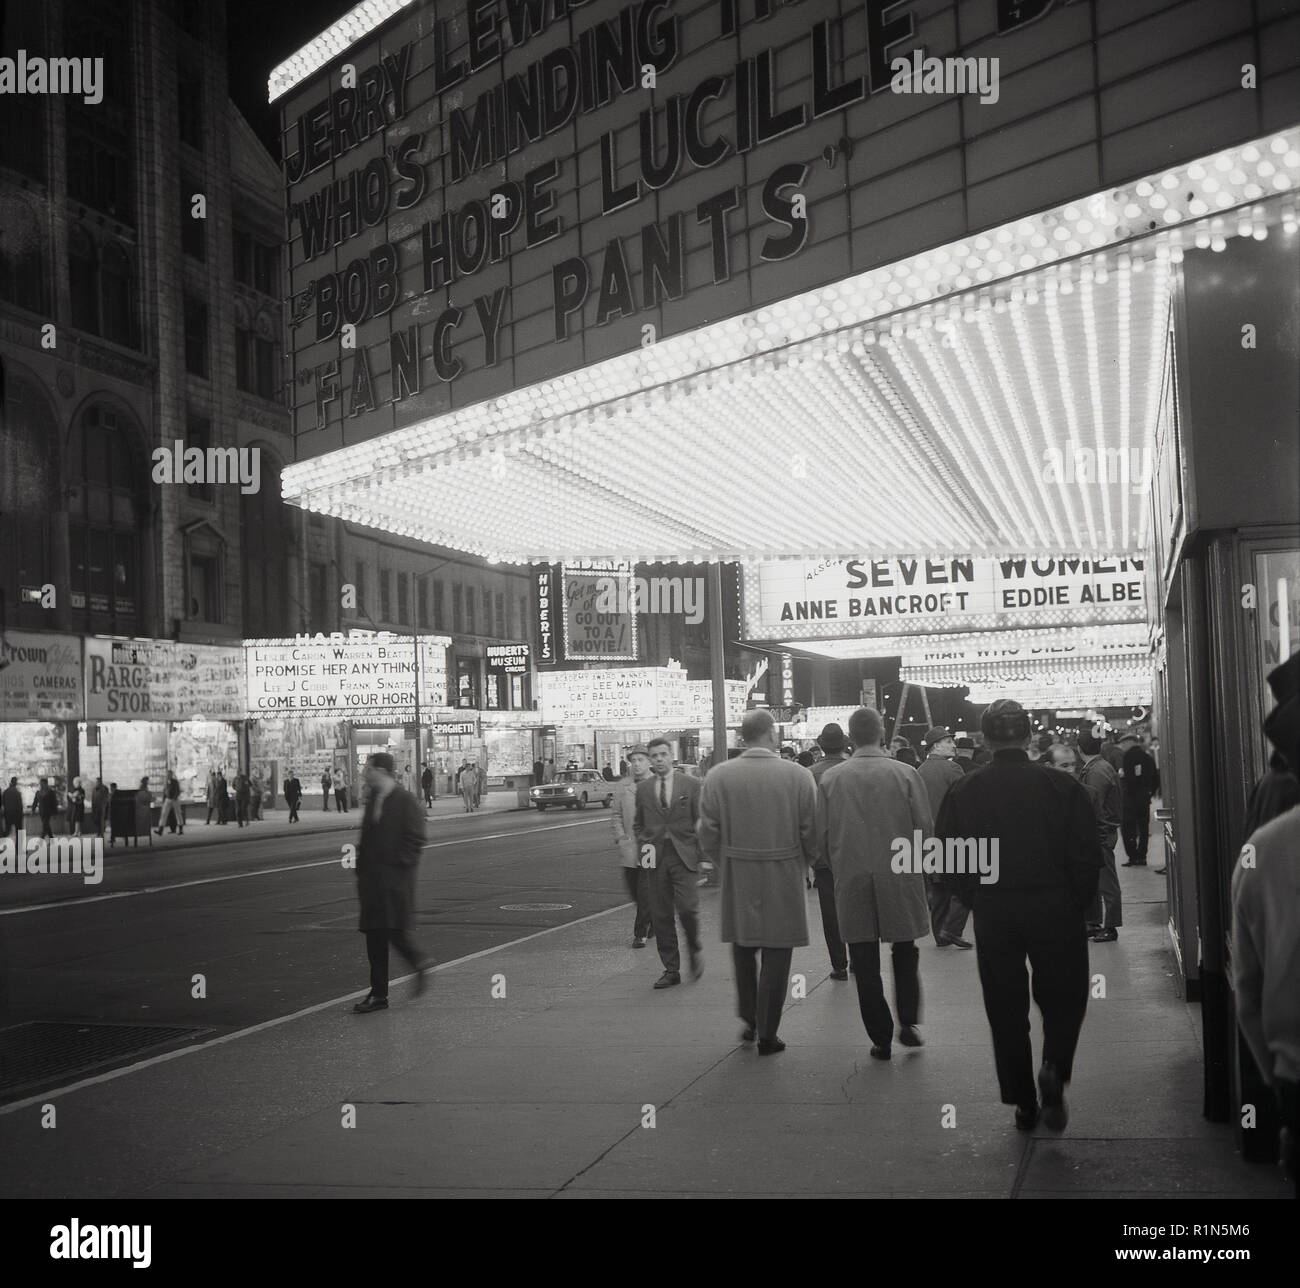 1963, serata in Times Square e Midtown Mahattan, il quartiere dei teatri di New York e le luci al neon di cinema e teatri illumina la strada. Mostra in questo momento, il Jerry Lee Lewis commedia film, 'chi occupa il negozio' e il film "fancy pants", interpretato da Bob Hope e Luciille palla. Foto Stock